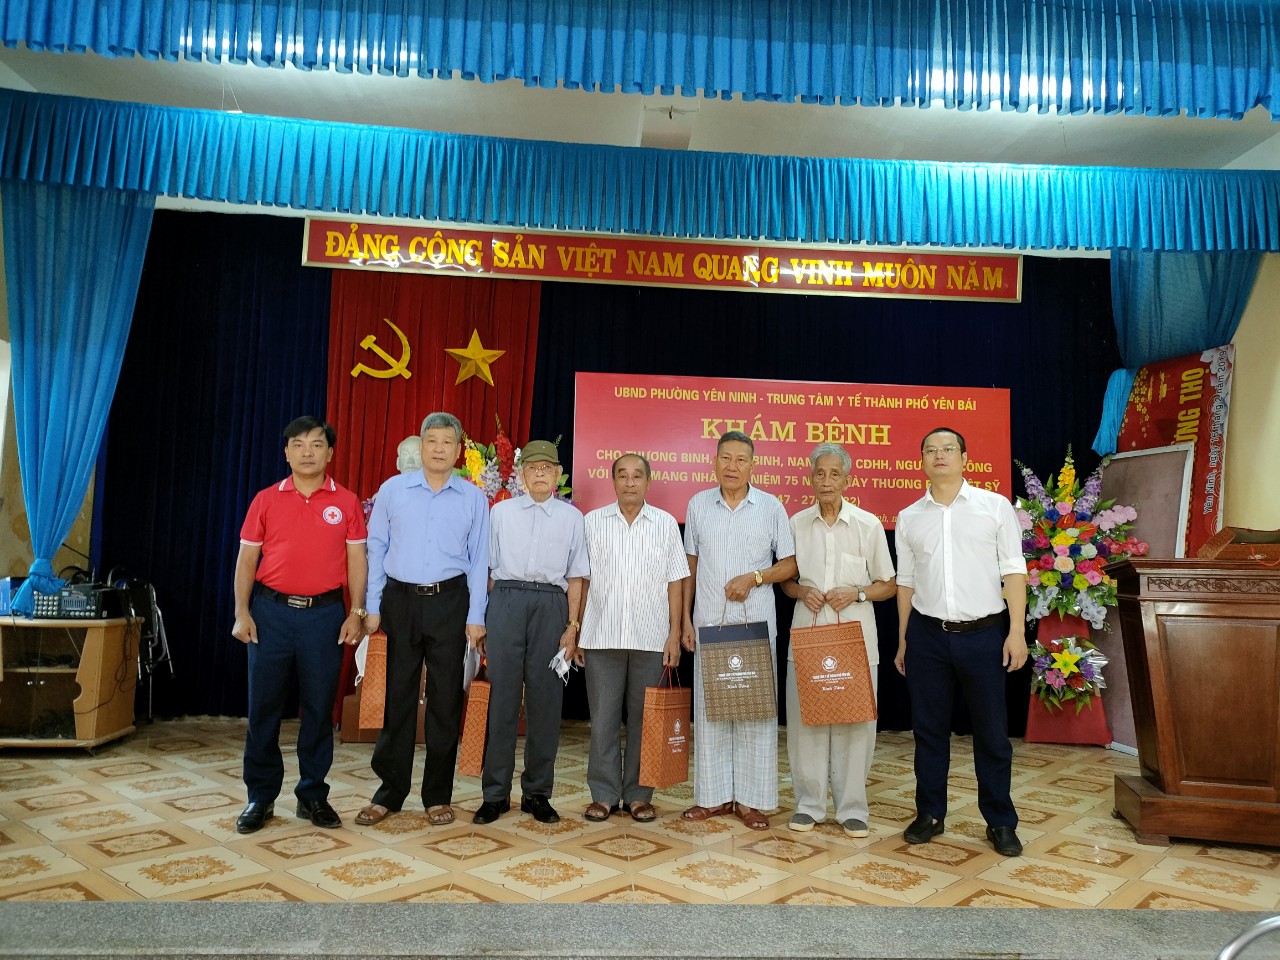    Khám bệnh, tư vấn sức khỏe và cấp phát thuốc miễn phí tại phường Yên Ninh